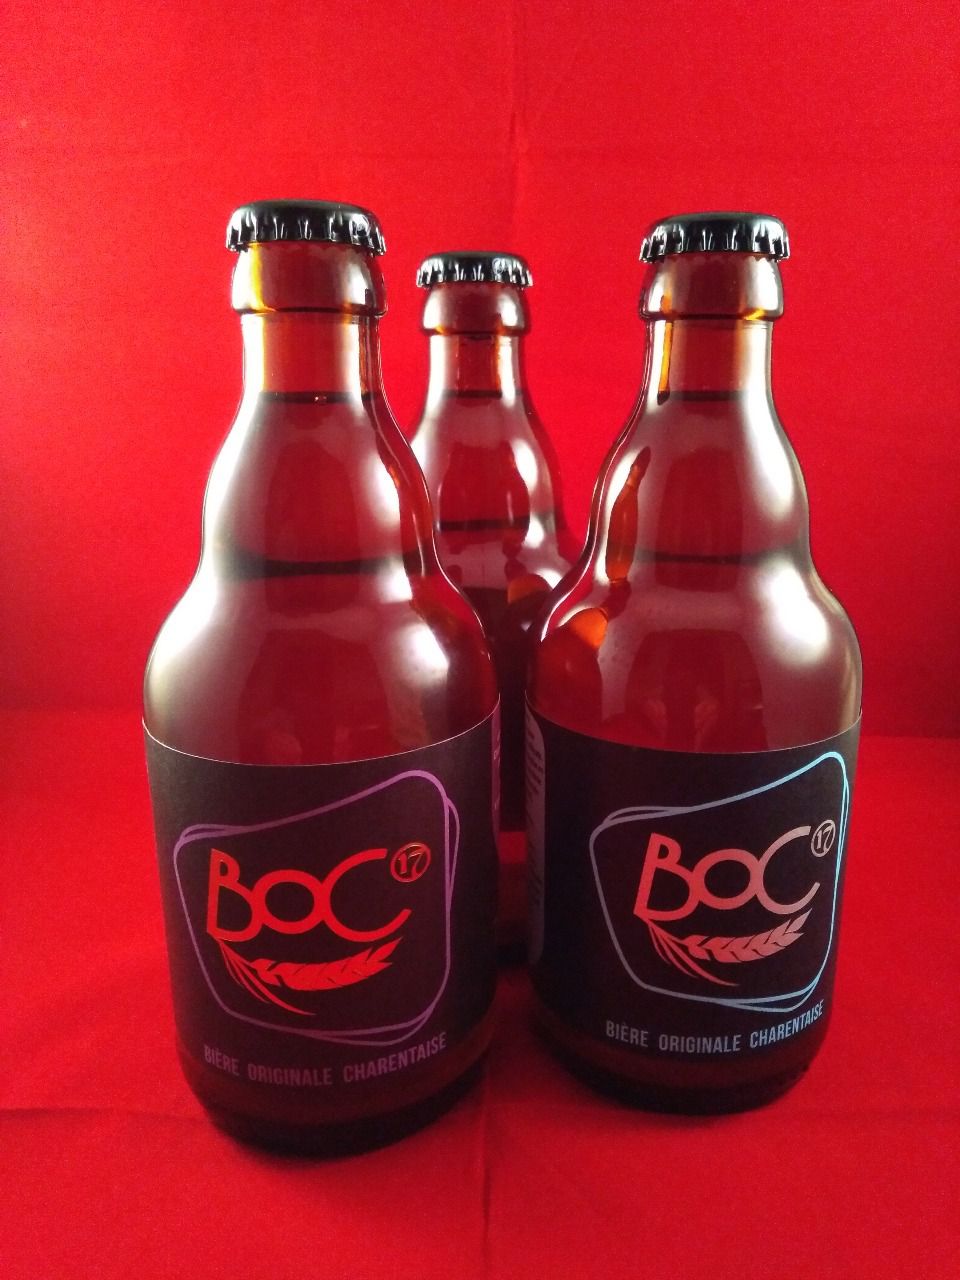 Boc, Bière Originale Charentaise - Brasserie BOC - 33cl